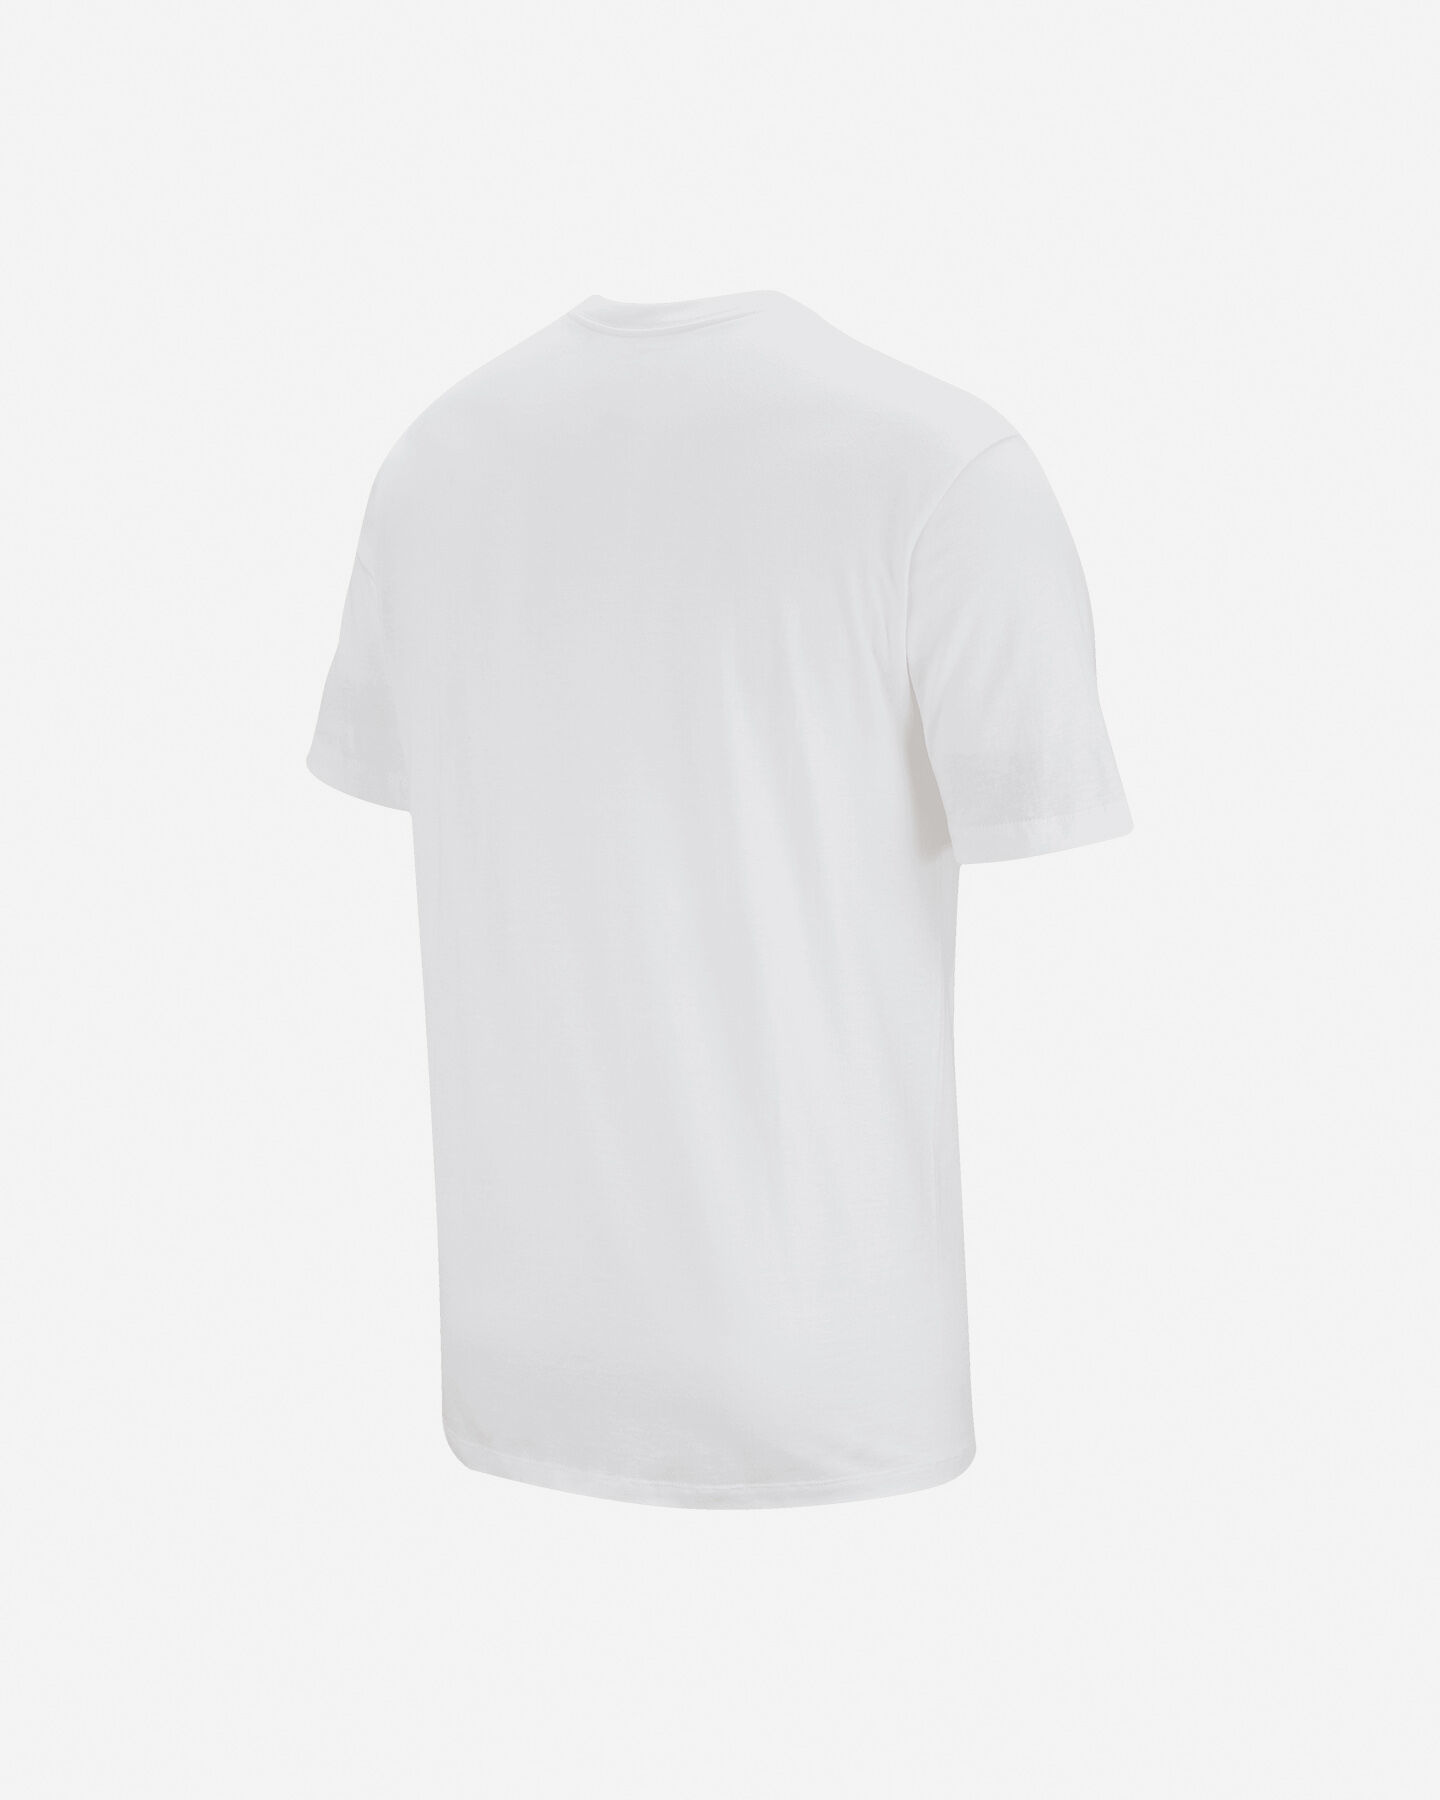  T-Shirt NIKE CLUB SMALL LOGO M S2023464 scatto 1